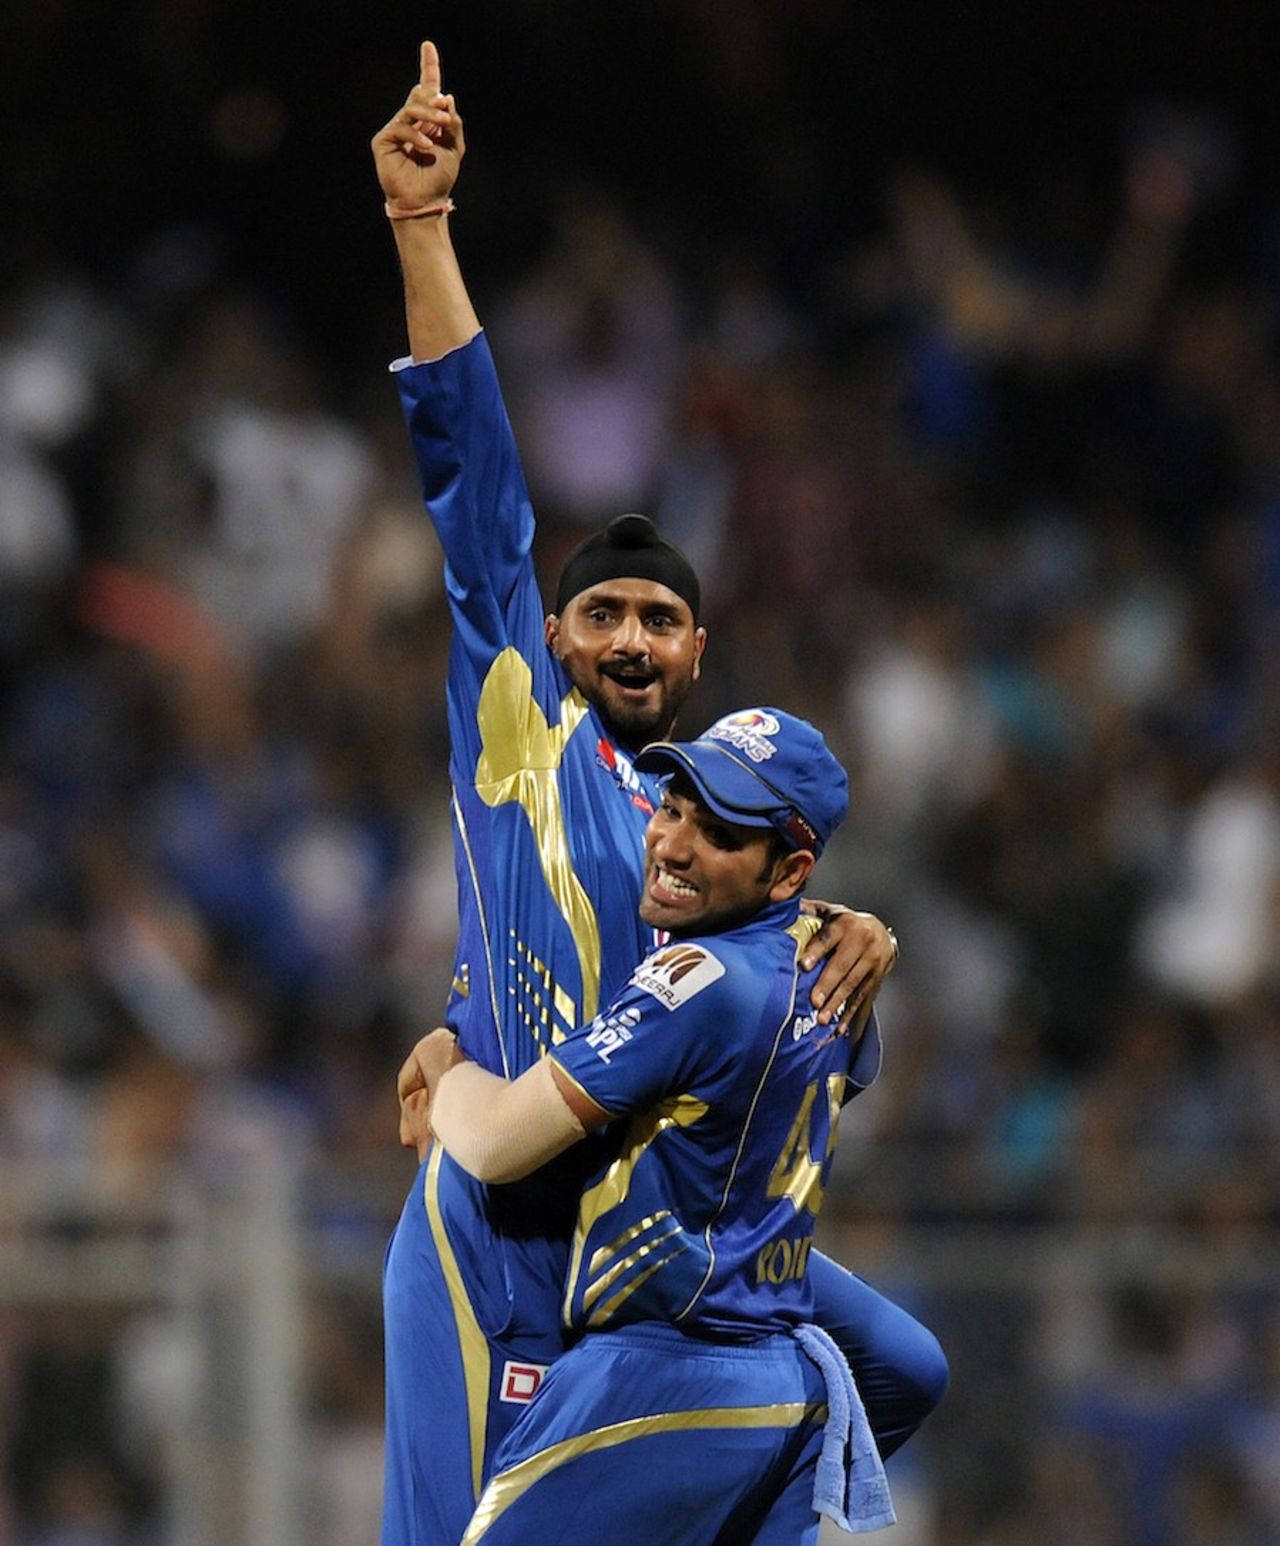 Harbhajan Singh and Rohit Sharma celebrate a wicket, Mumbai Indians v Kolkata Knight Riders, IPL, Mumbai, May 7, 2013